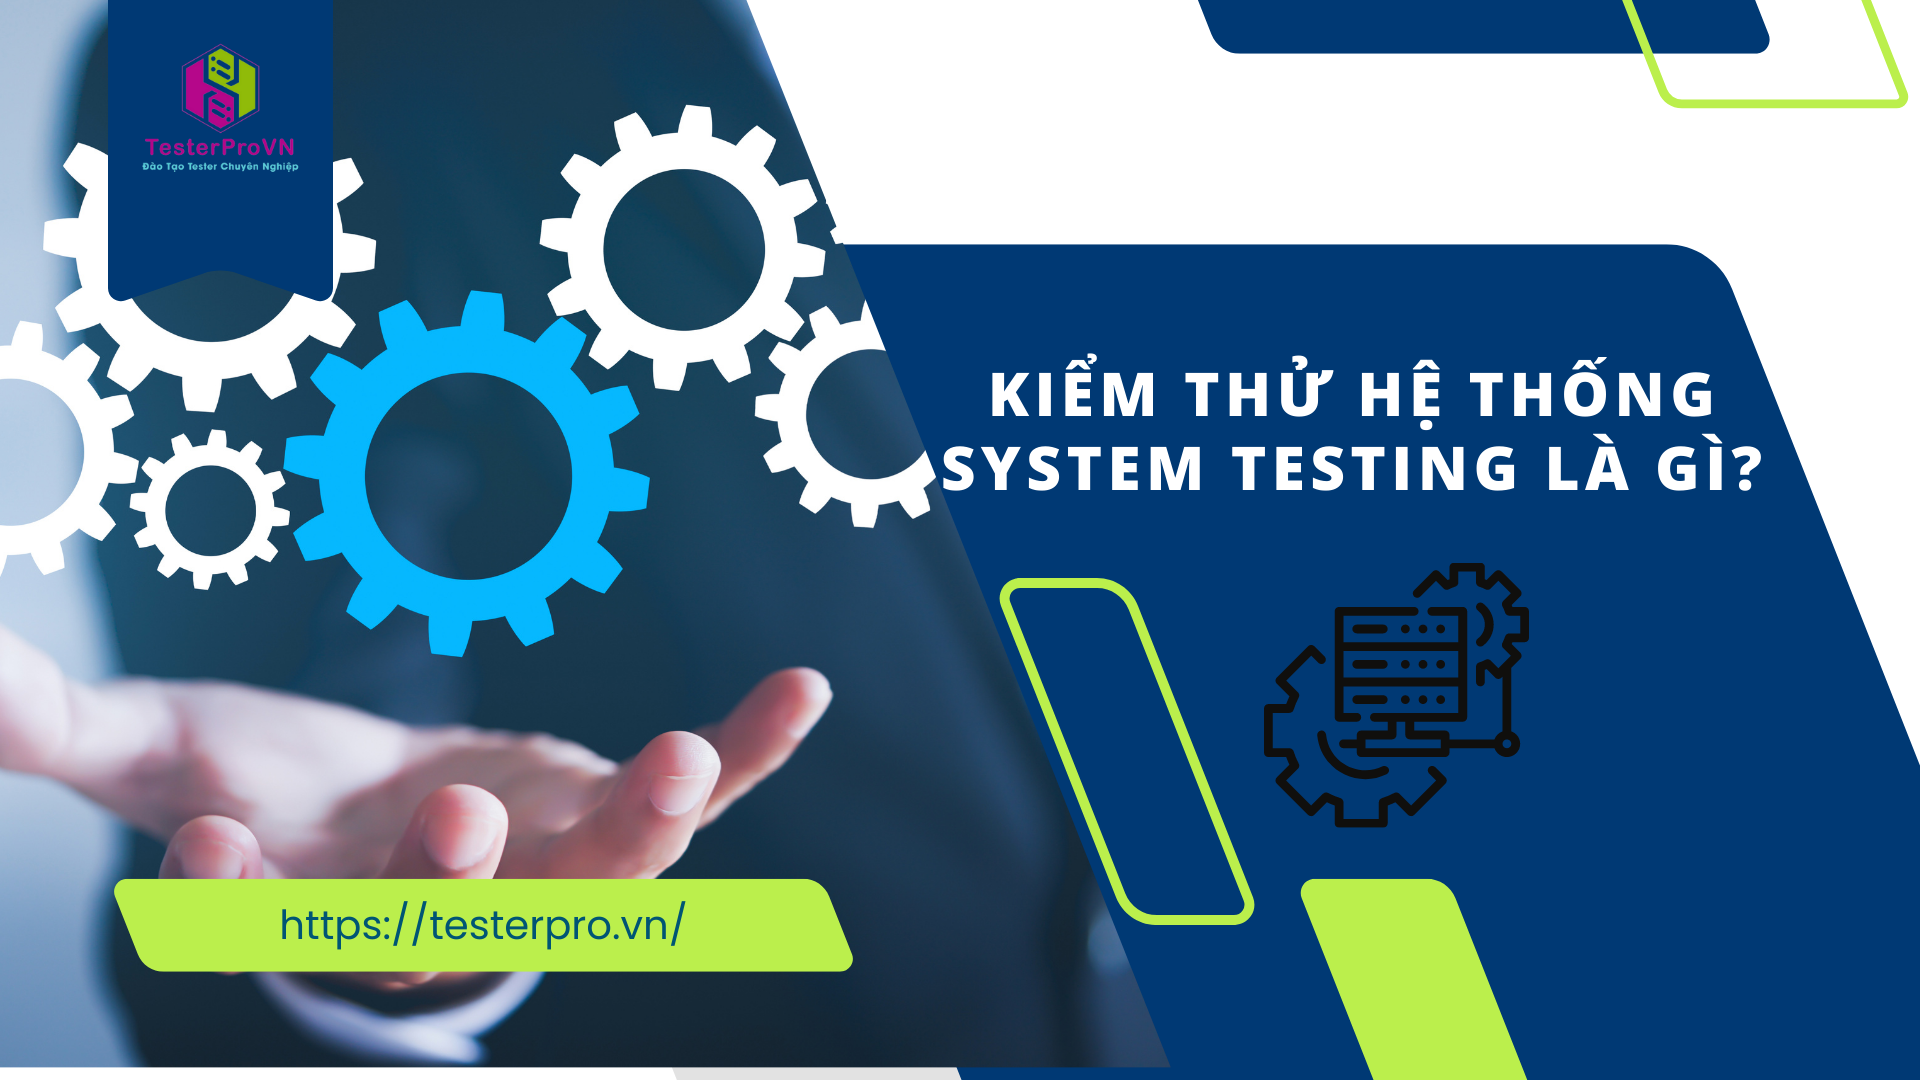 Kiểm thử hệ thống – System Testing là gì?